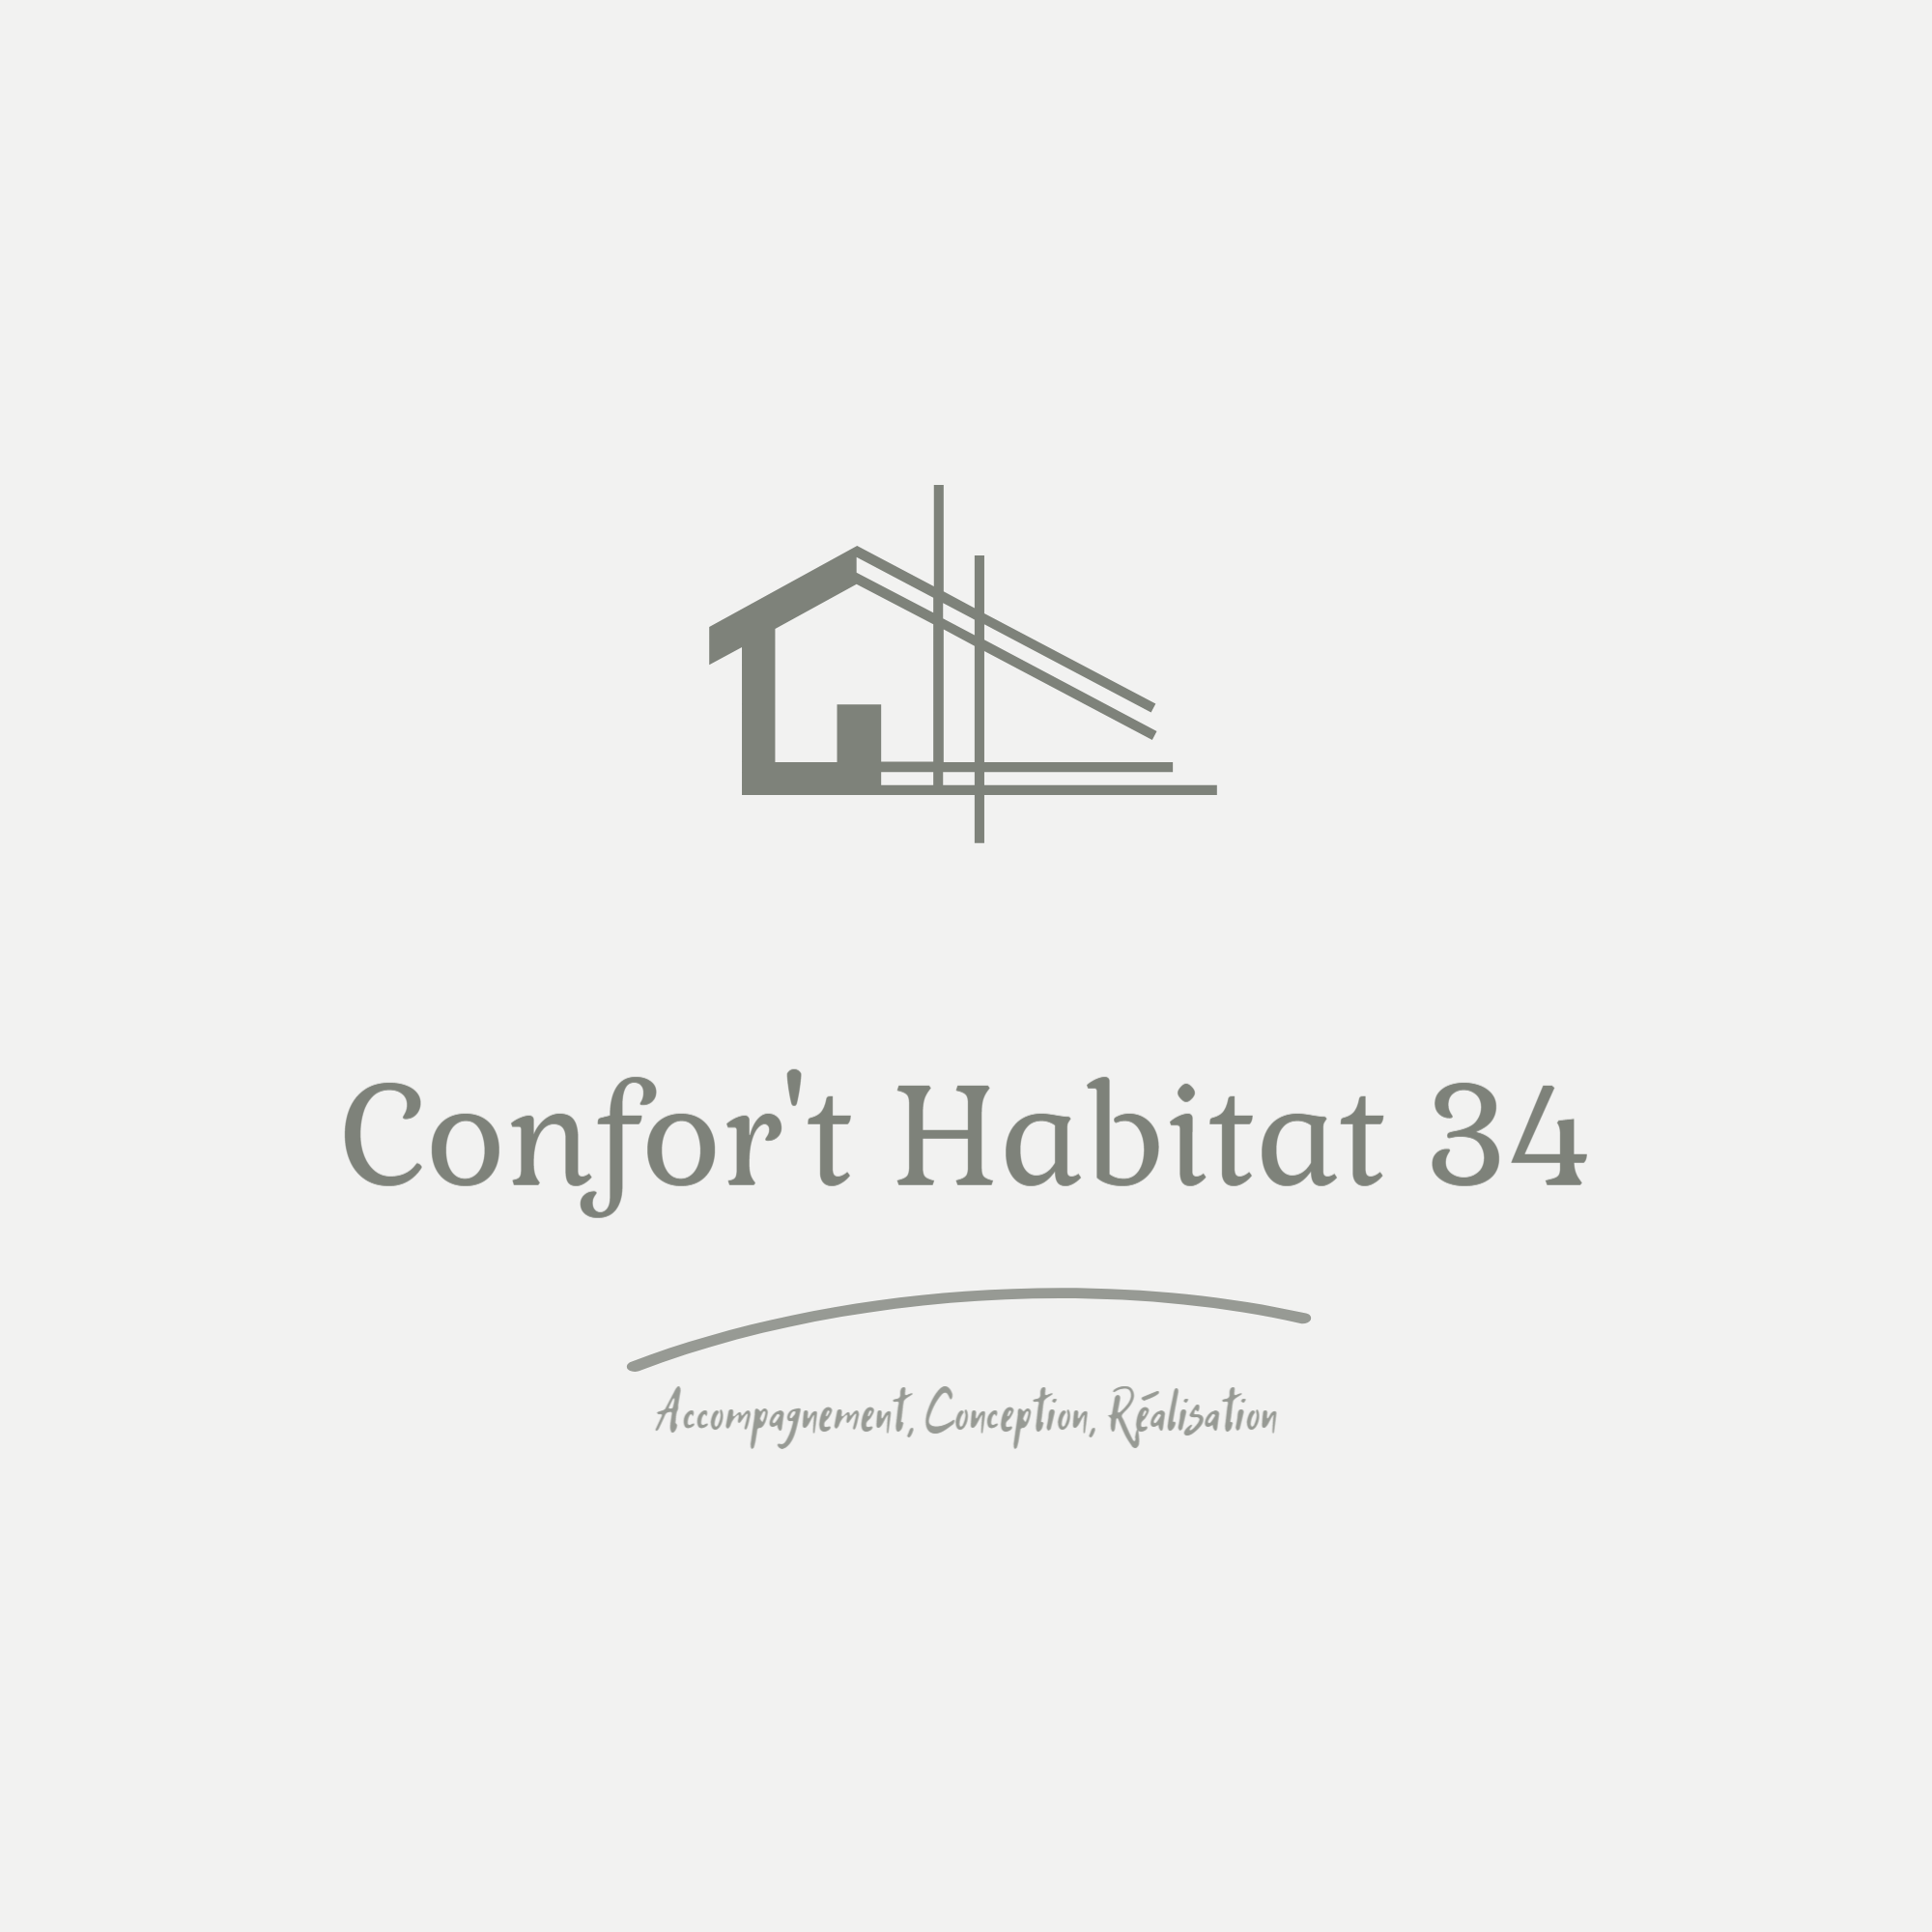 Logo de Confor't Habitat 34, société de travaux en Fourniture et remplacement de porte ou fenêtre en PVC